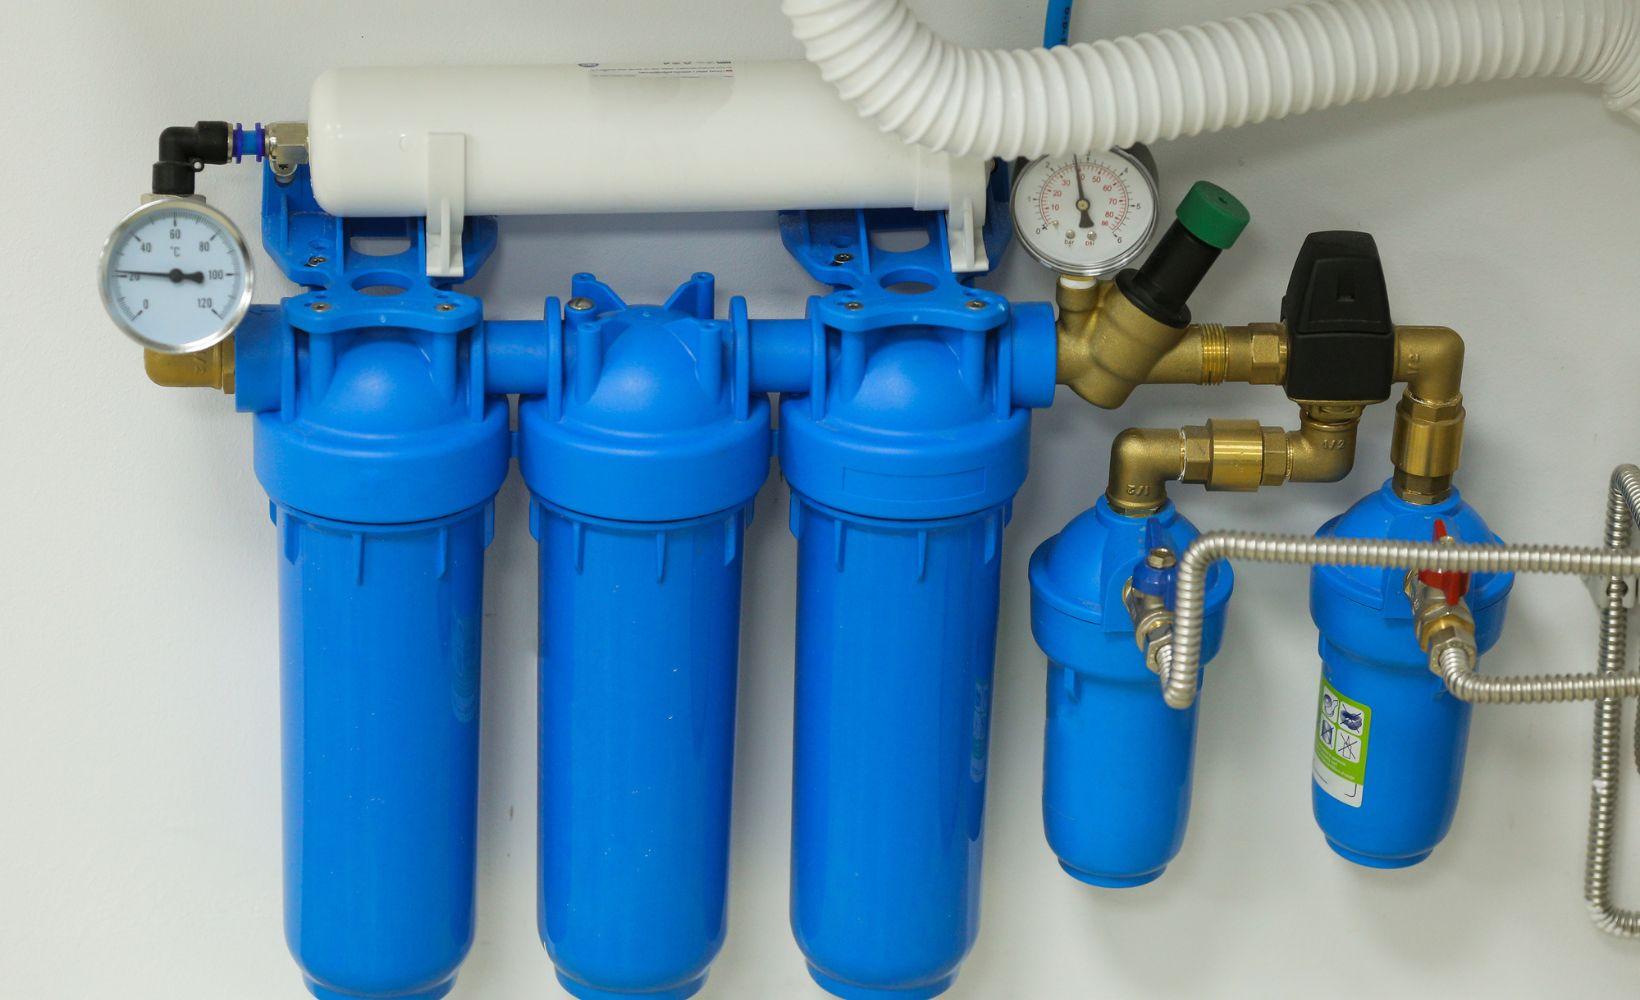 Filtre sous-évier - Comment fonctionne un filtre sous évier ?